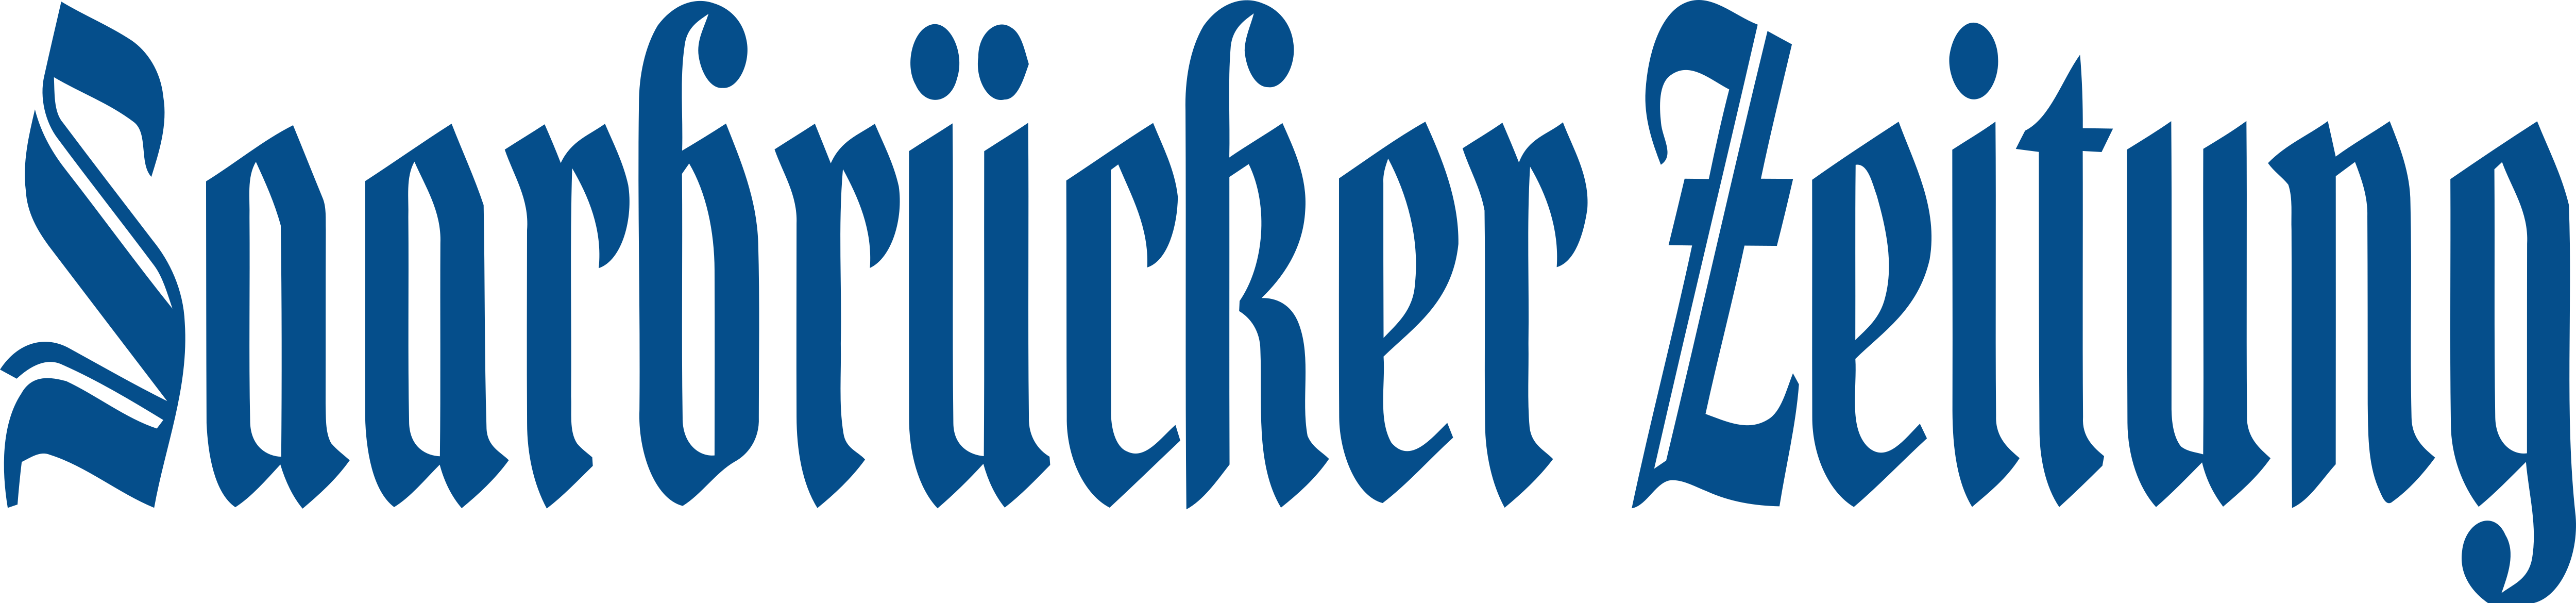 Bildergebnis für logo der saarbrücker zeitung